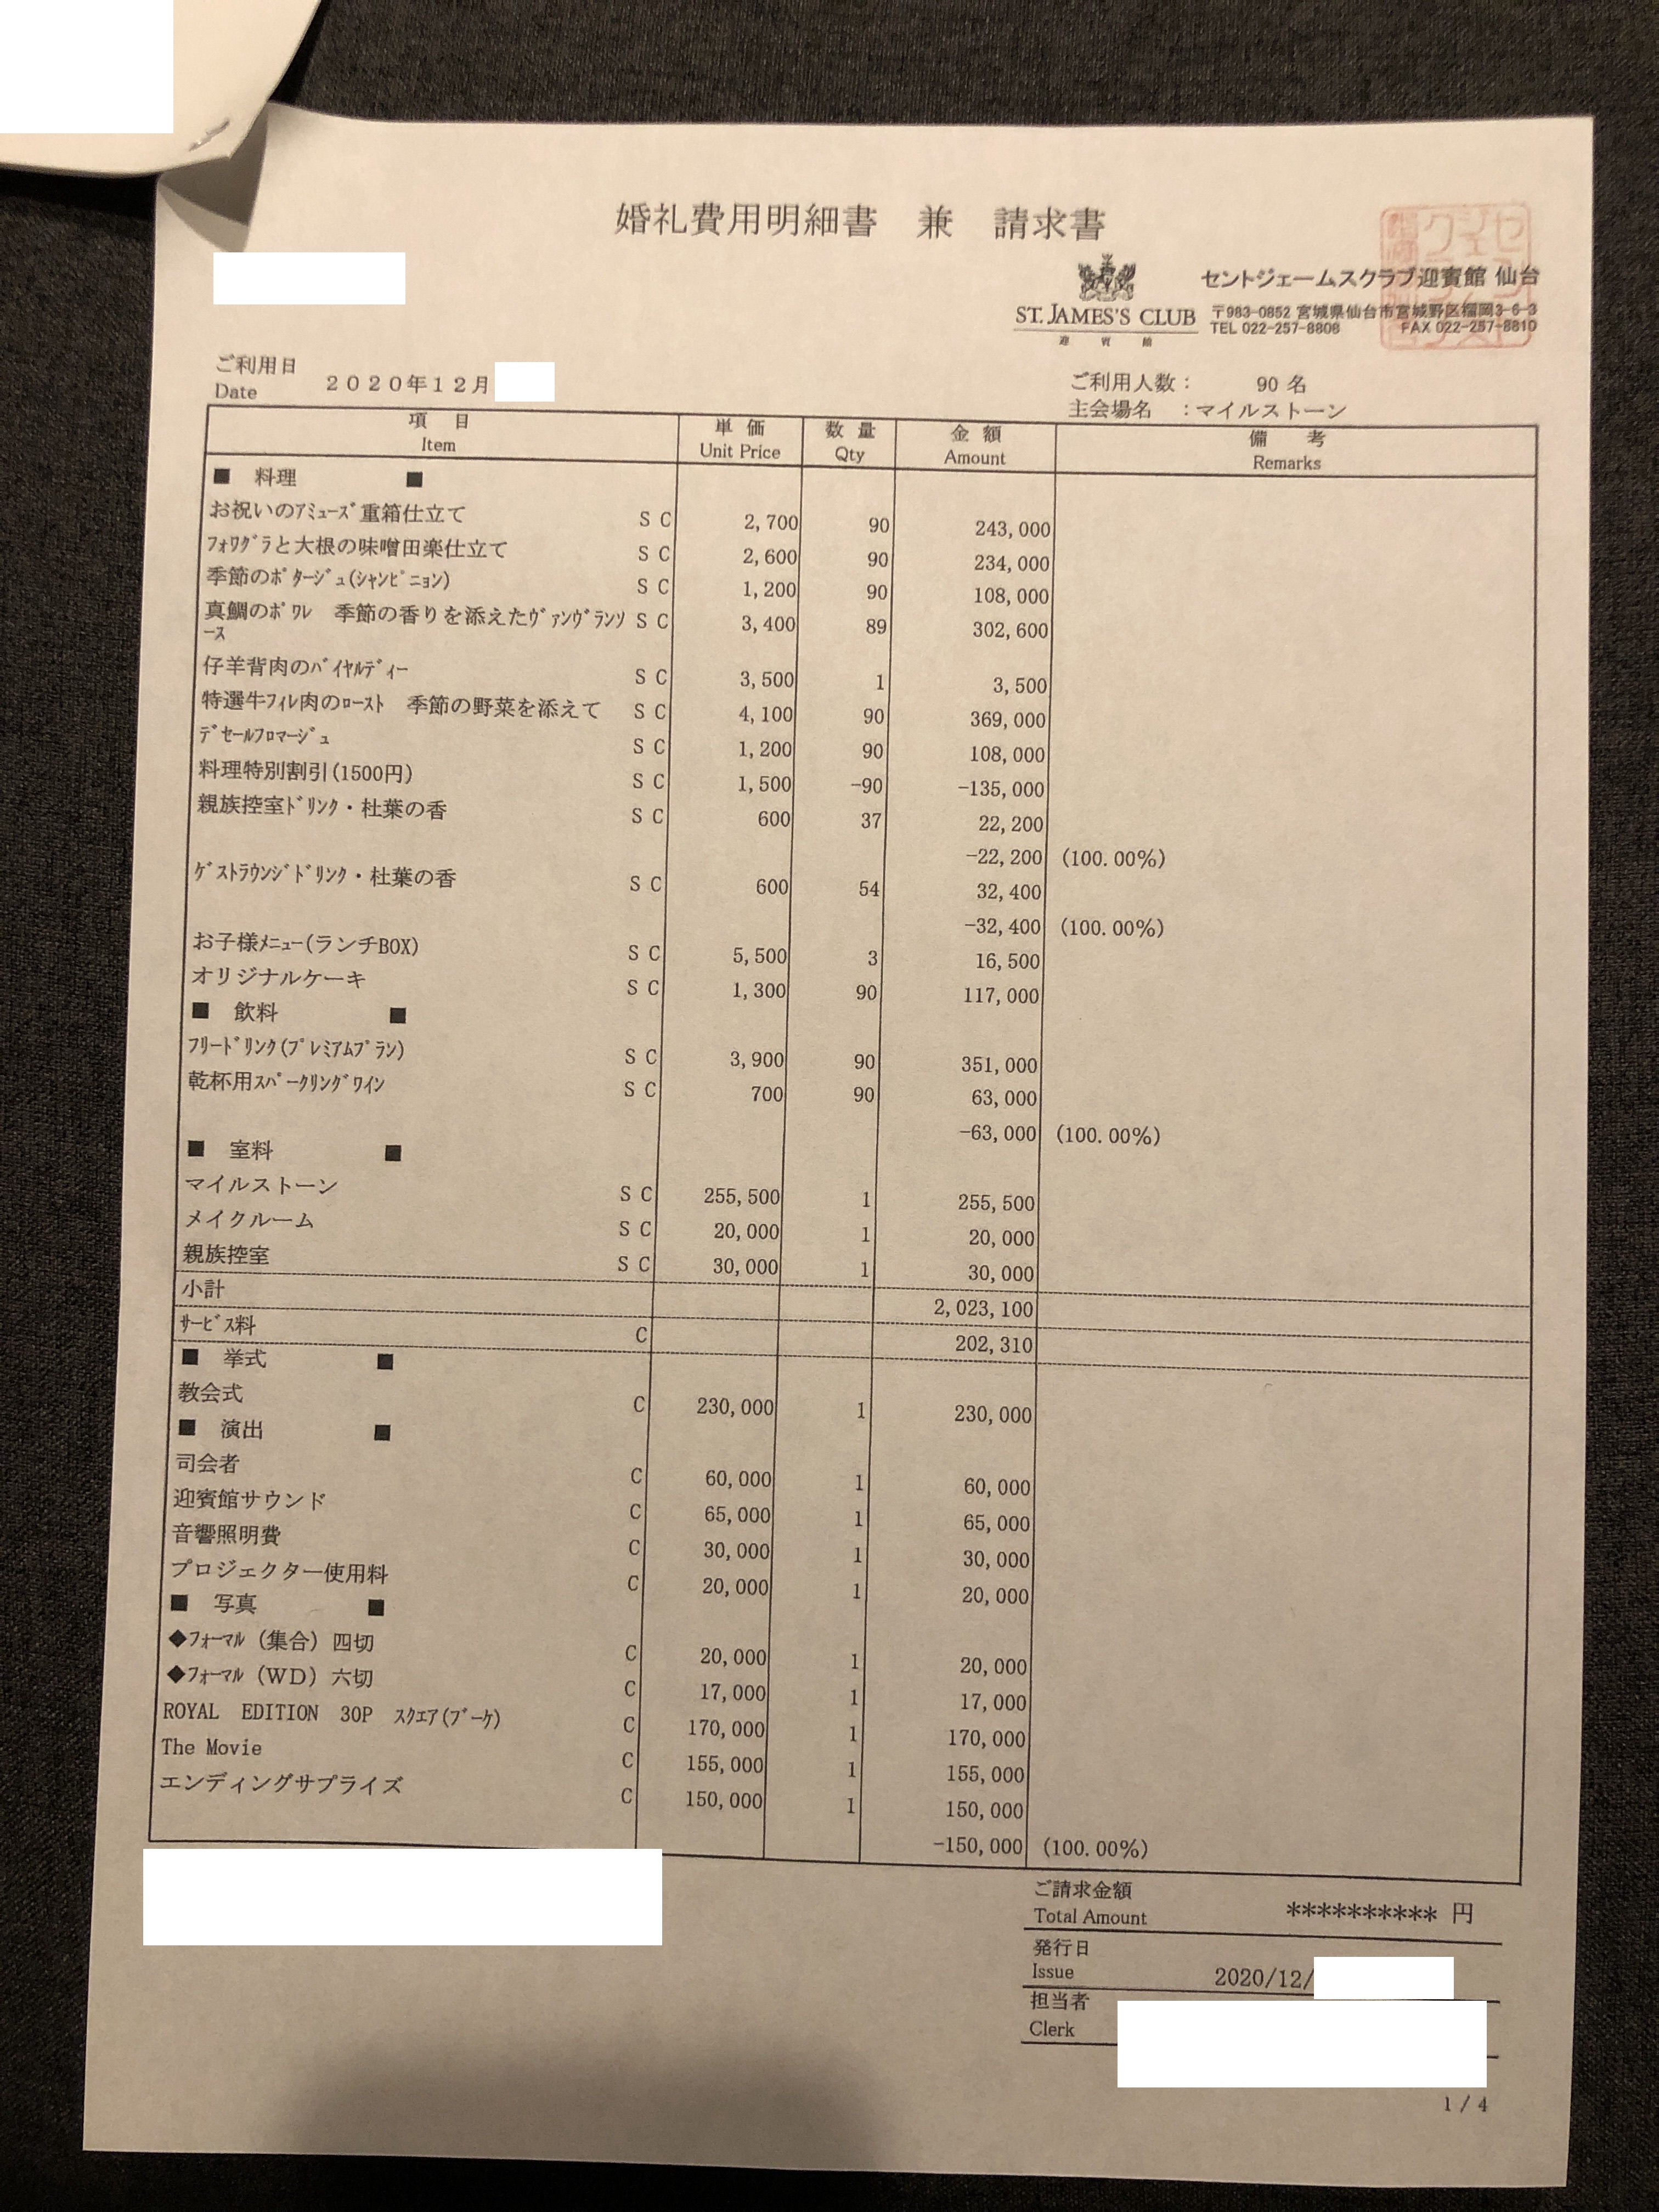 SN96 さんの費用明細(本番)